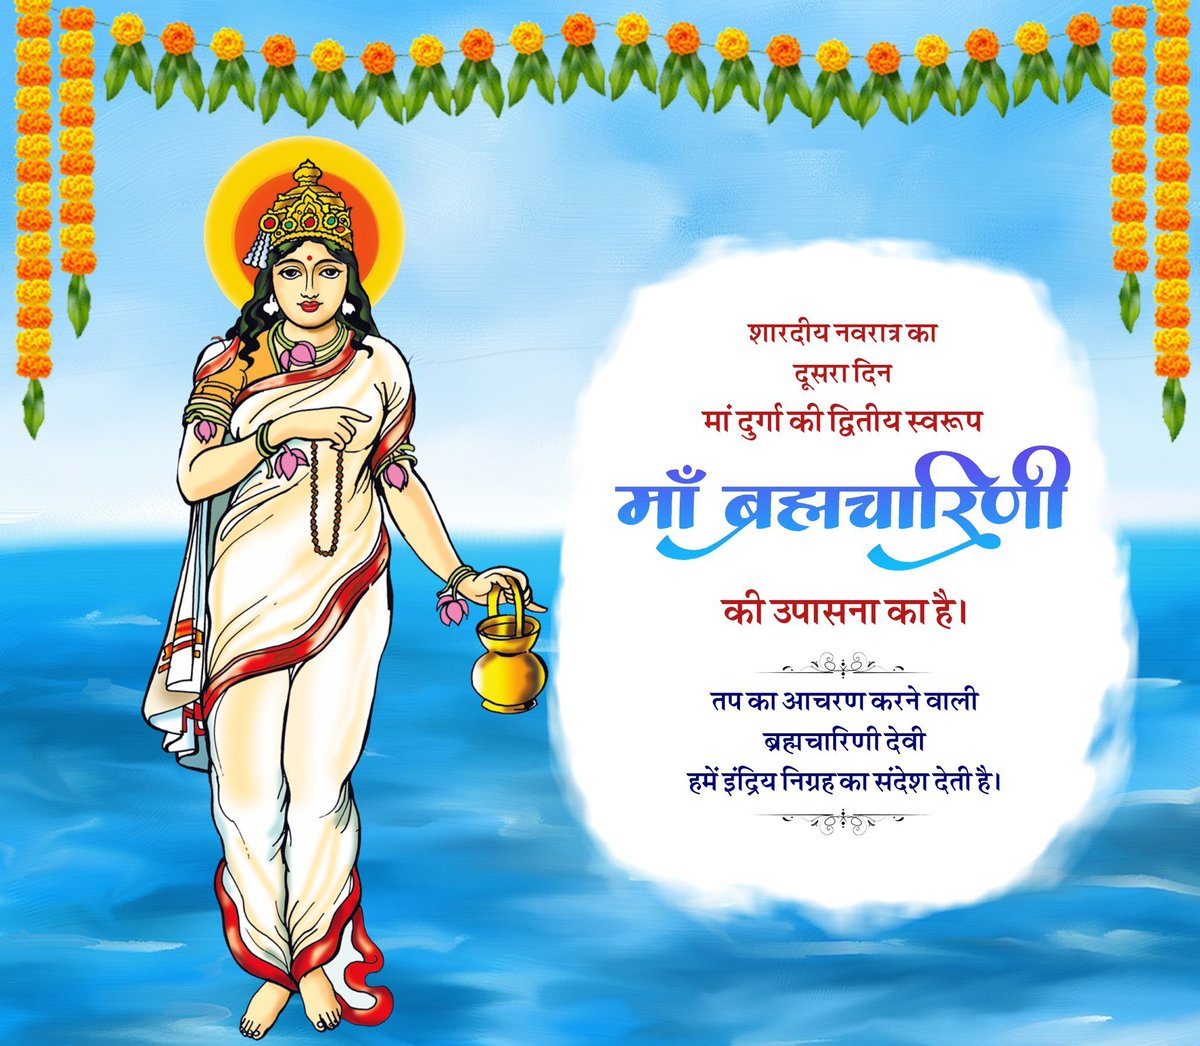 शारदीय नवरात्र का दूसरा दिन मां ब्रह्मचारिणी की उपासना का है।
तप का आचरण करने वाली ब्रह्मचारिणी देवी हमें इंद्रिय निग्रह का संदेश देती है।

#ShardiyaNavratri